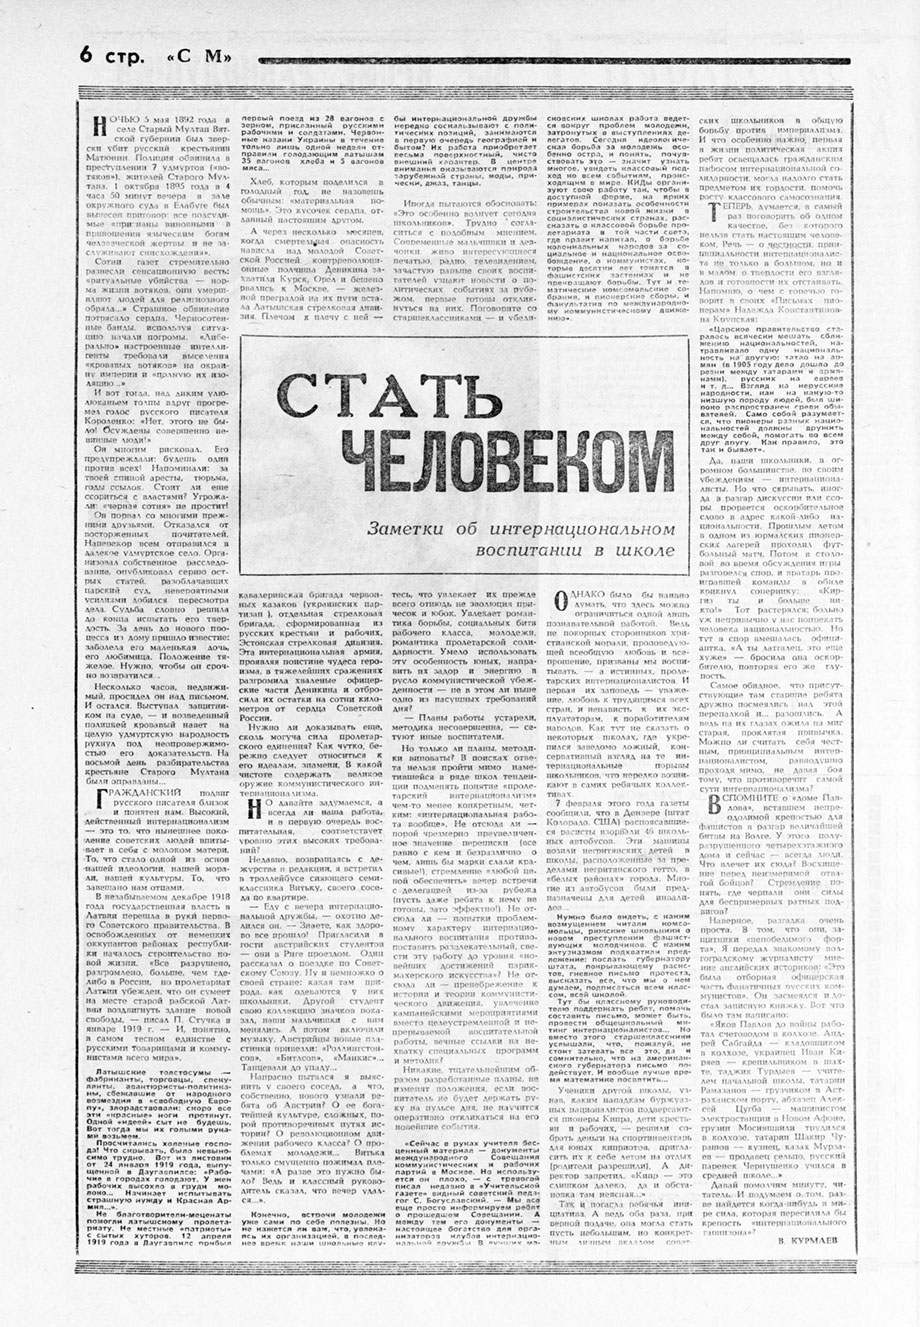 В. Курмаев. Стать человеком. Газета Советская молодёжь (Рига) № 42 (6297) от 1 марта 1970 года, стр. 6 – упоминание Битлз